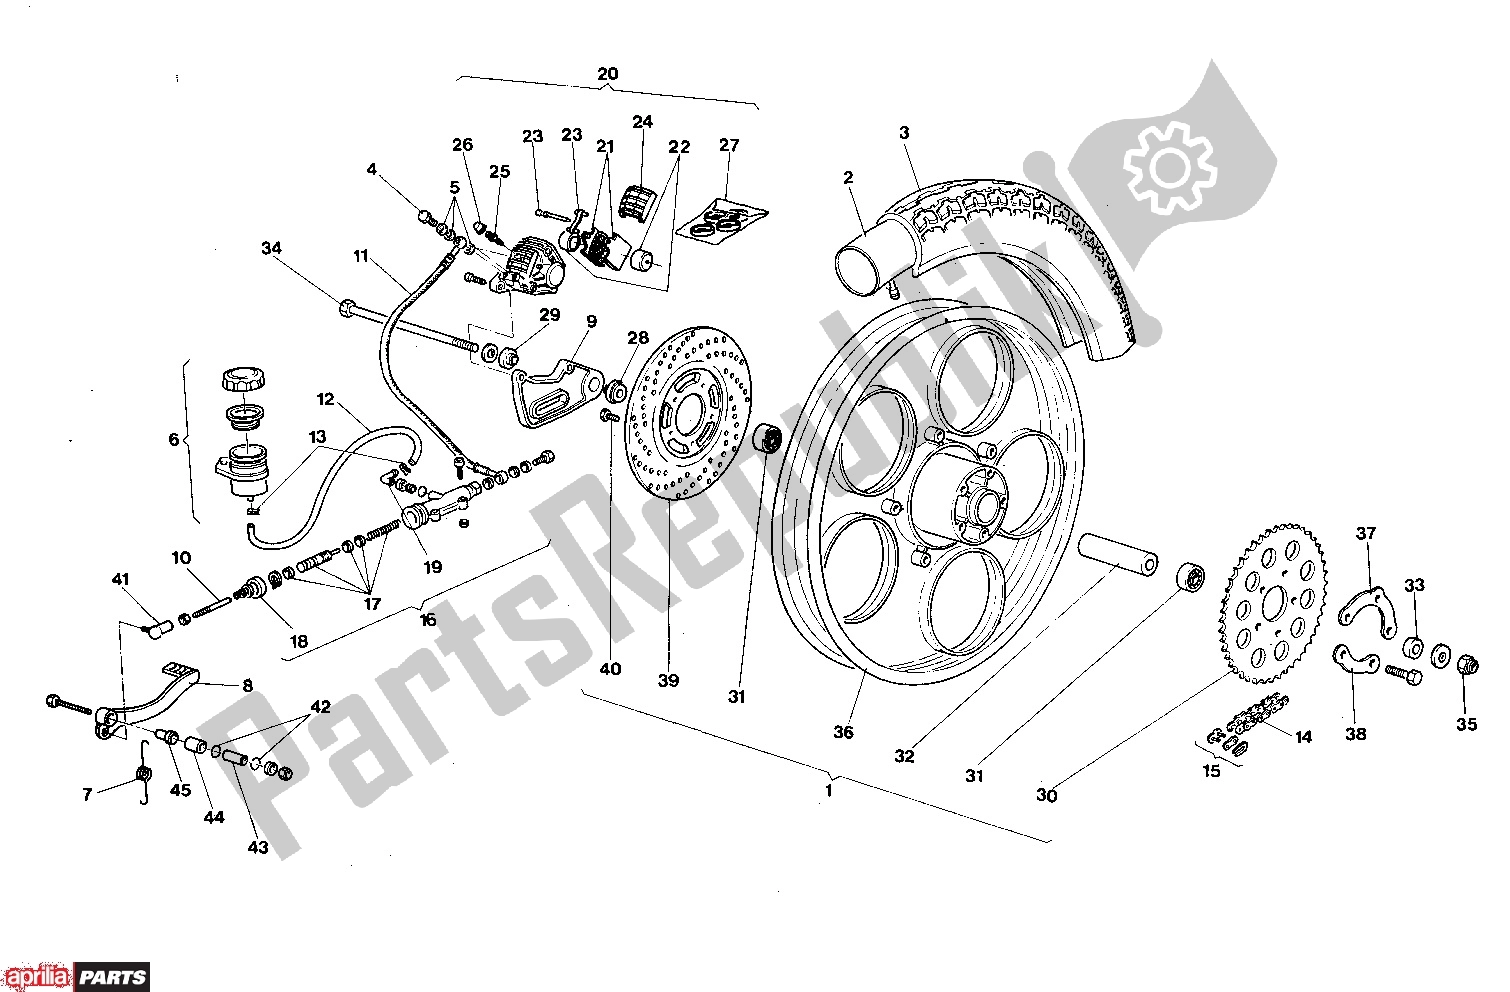 Toutes les pièces pour le Rear Wheel Disk Brake du Aprilia AF1 303 50 1986 - 1988